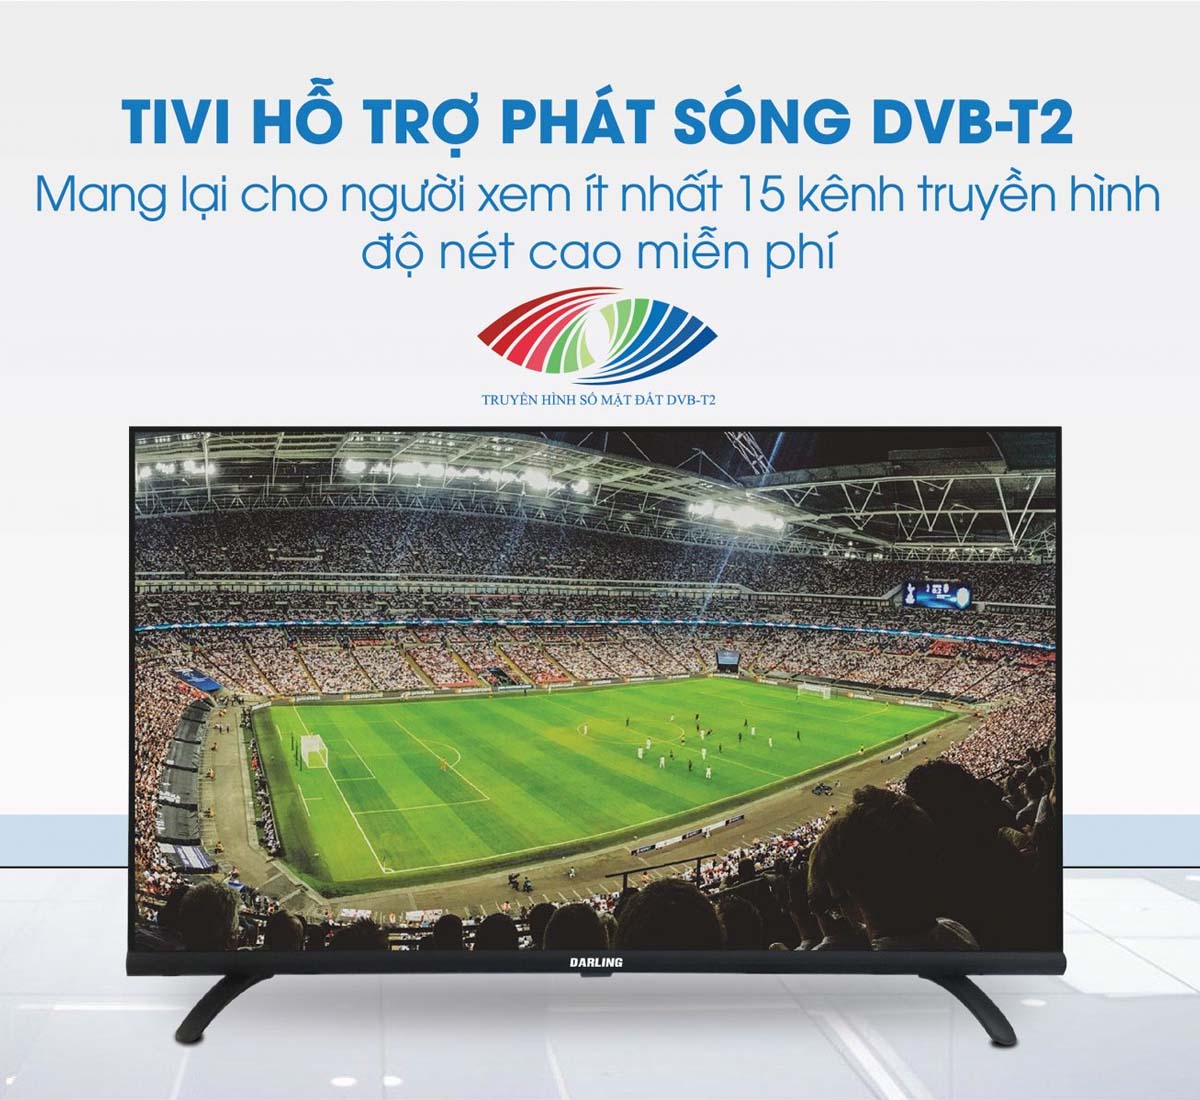 Hỗ trợ phát sóng truyền hình kỹ thuật số mặt đất DVB-T2